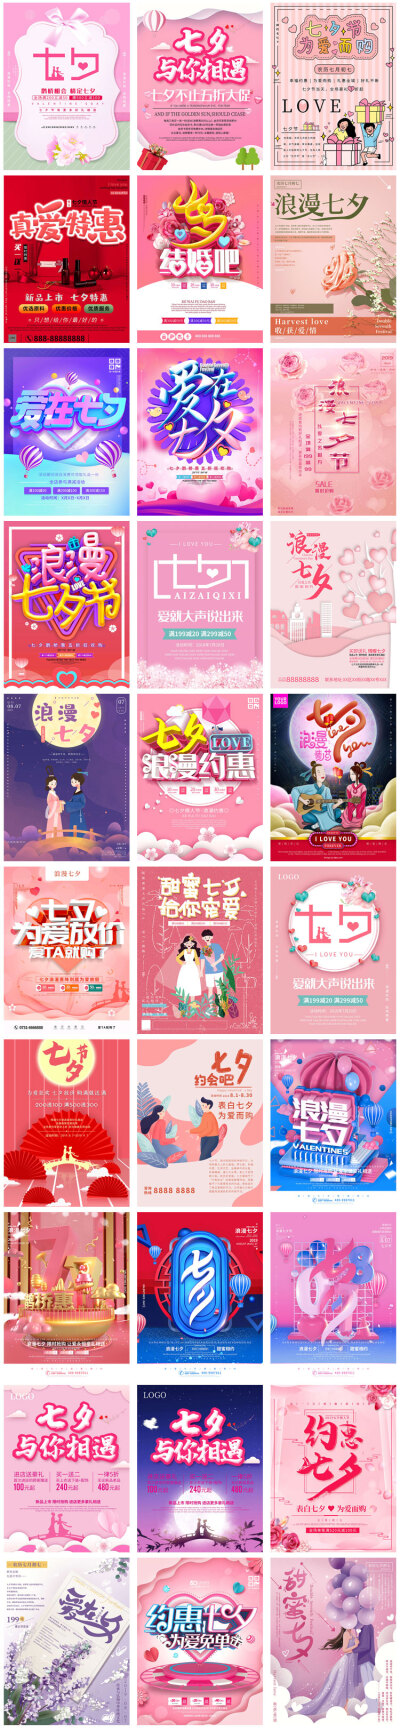 七夕节中国传统情人节日电商活动情侣爱情海报psd模板设计素材